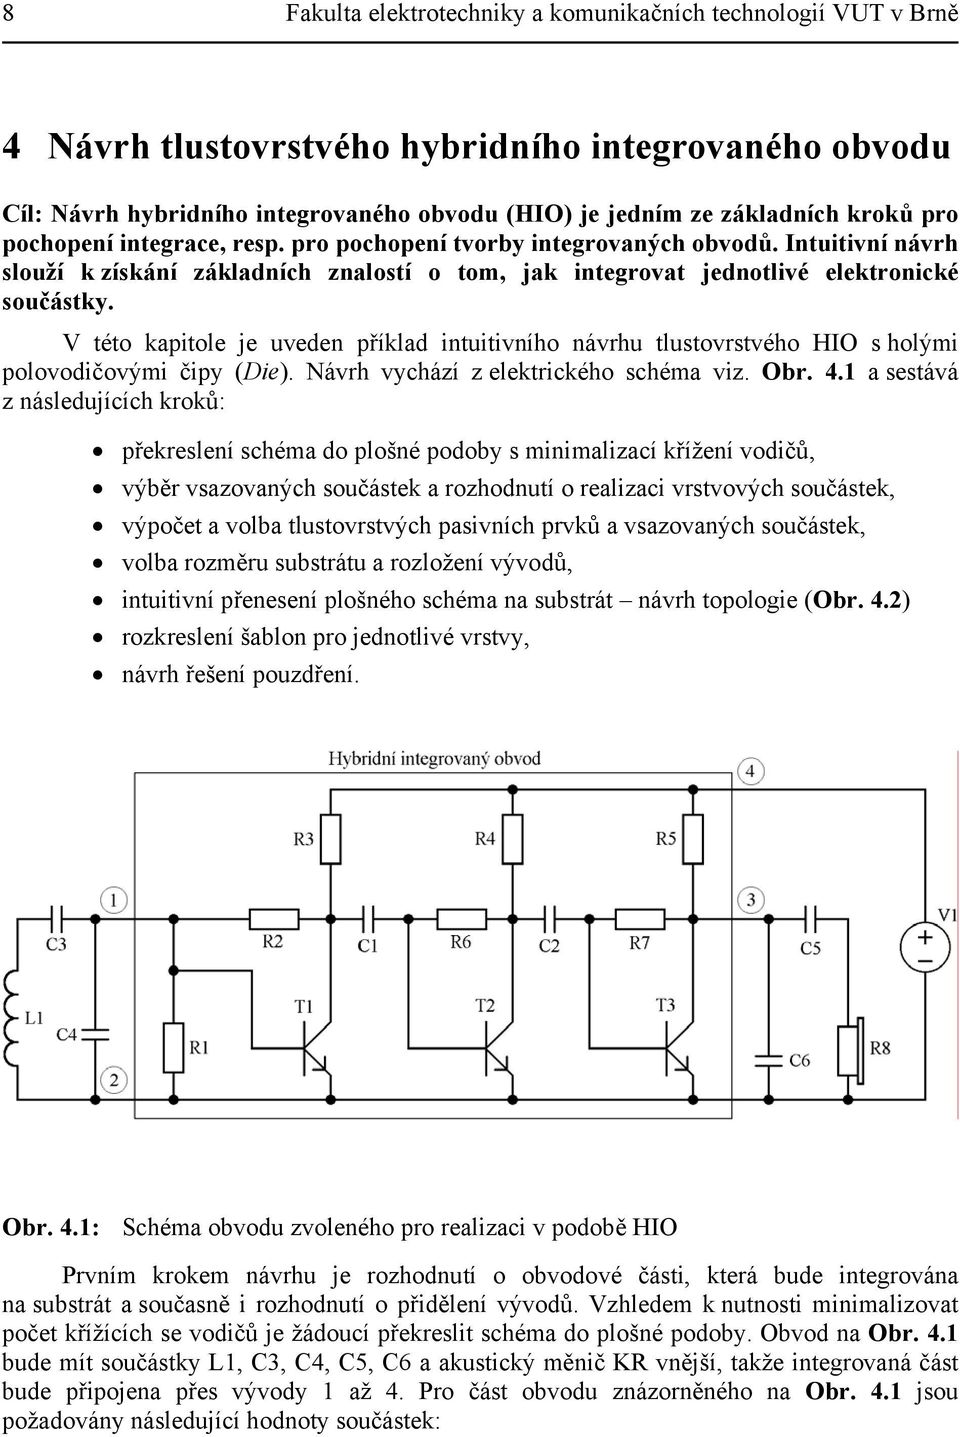 V této kapitole je uveden příklad intuitivního návrhu tlustovrstvého HIO s holými polovodičovými čipy (Die). Návrh vychází z elektrického schéma viz. Obr. 4.